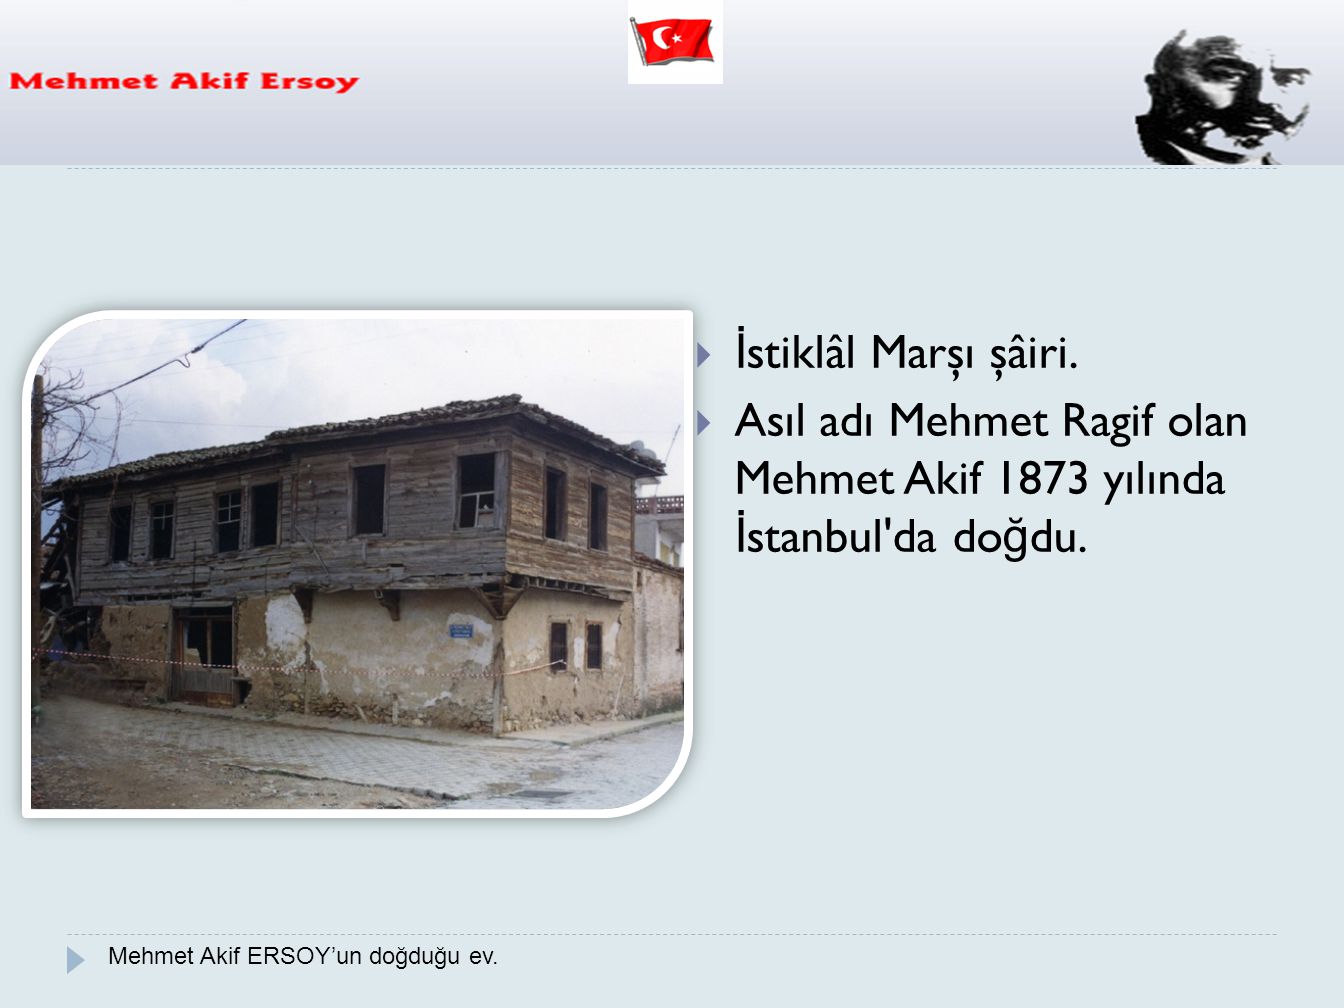 Asıl adı Mehmet Ragif olan Mehmet Akif 1873 yılında İstanbul da doğdu.